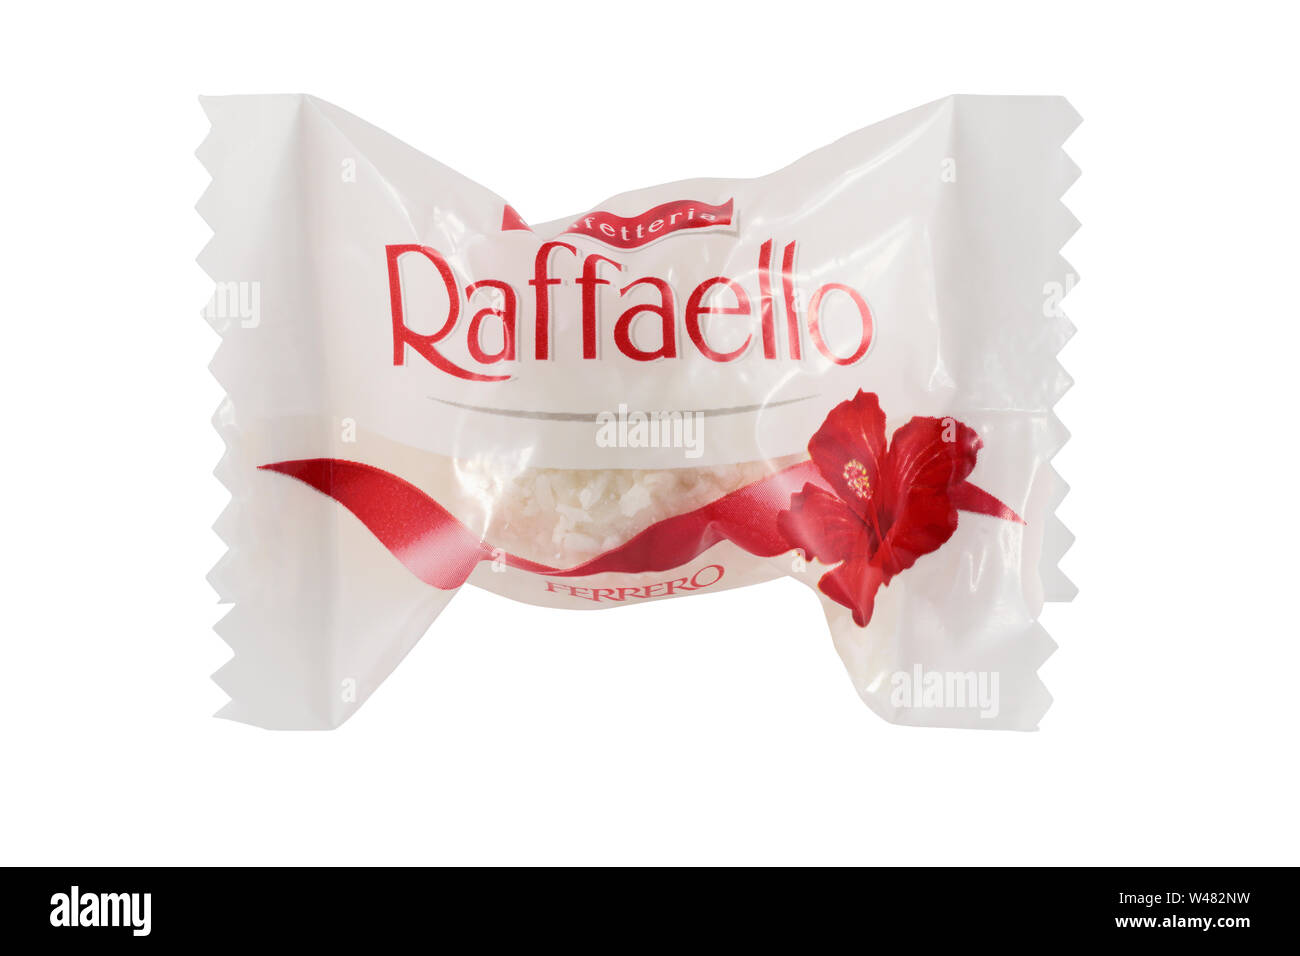 A single wrapped Ferrero Rafaello isolated on a white background Stock Photo